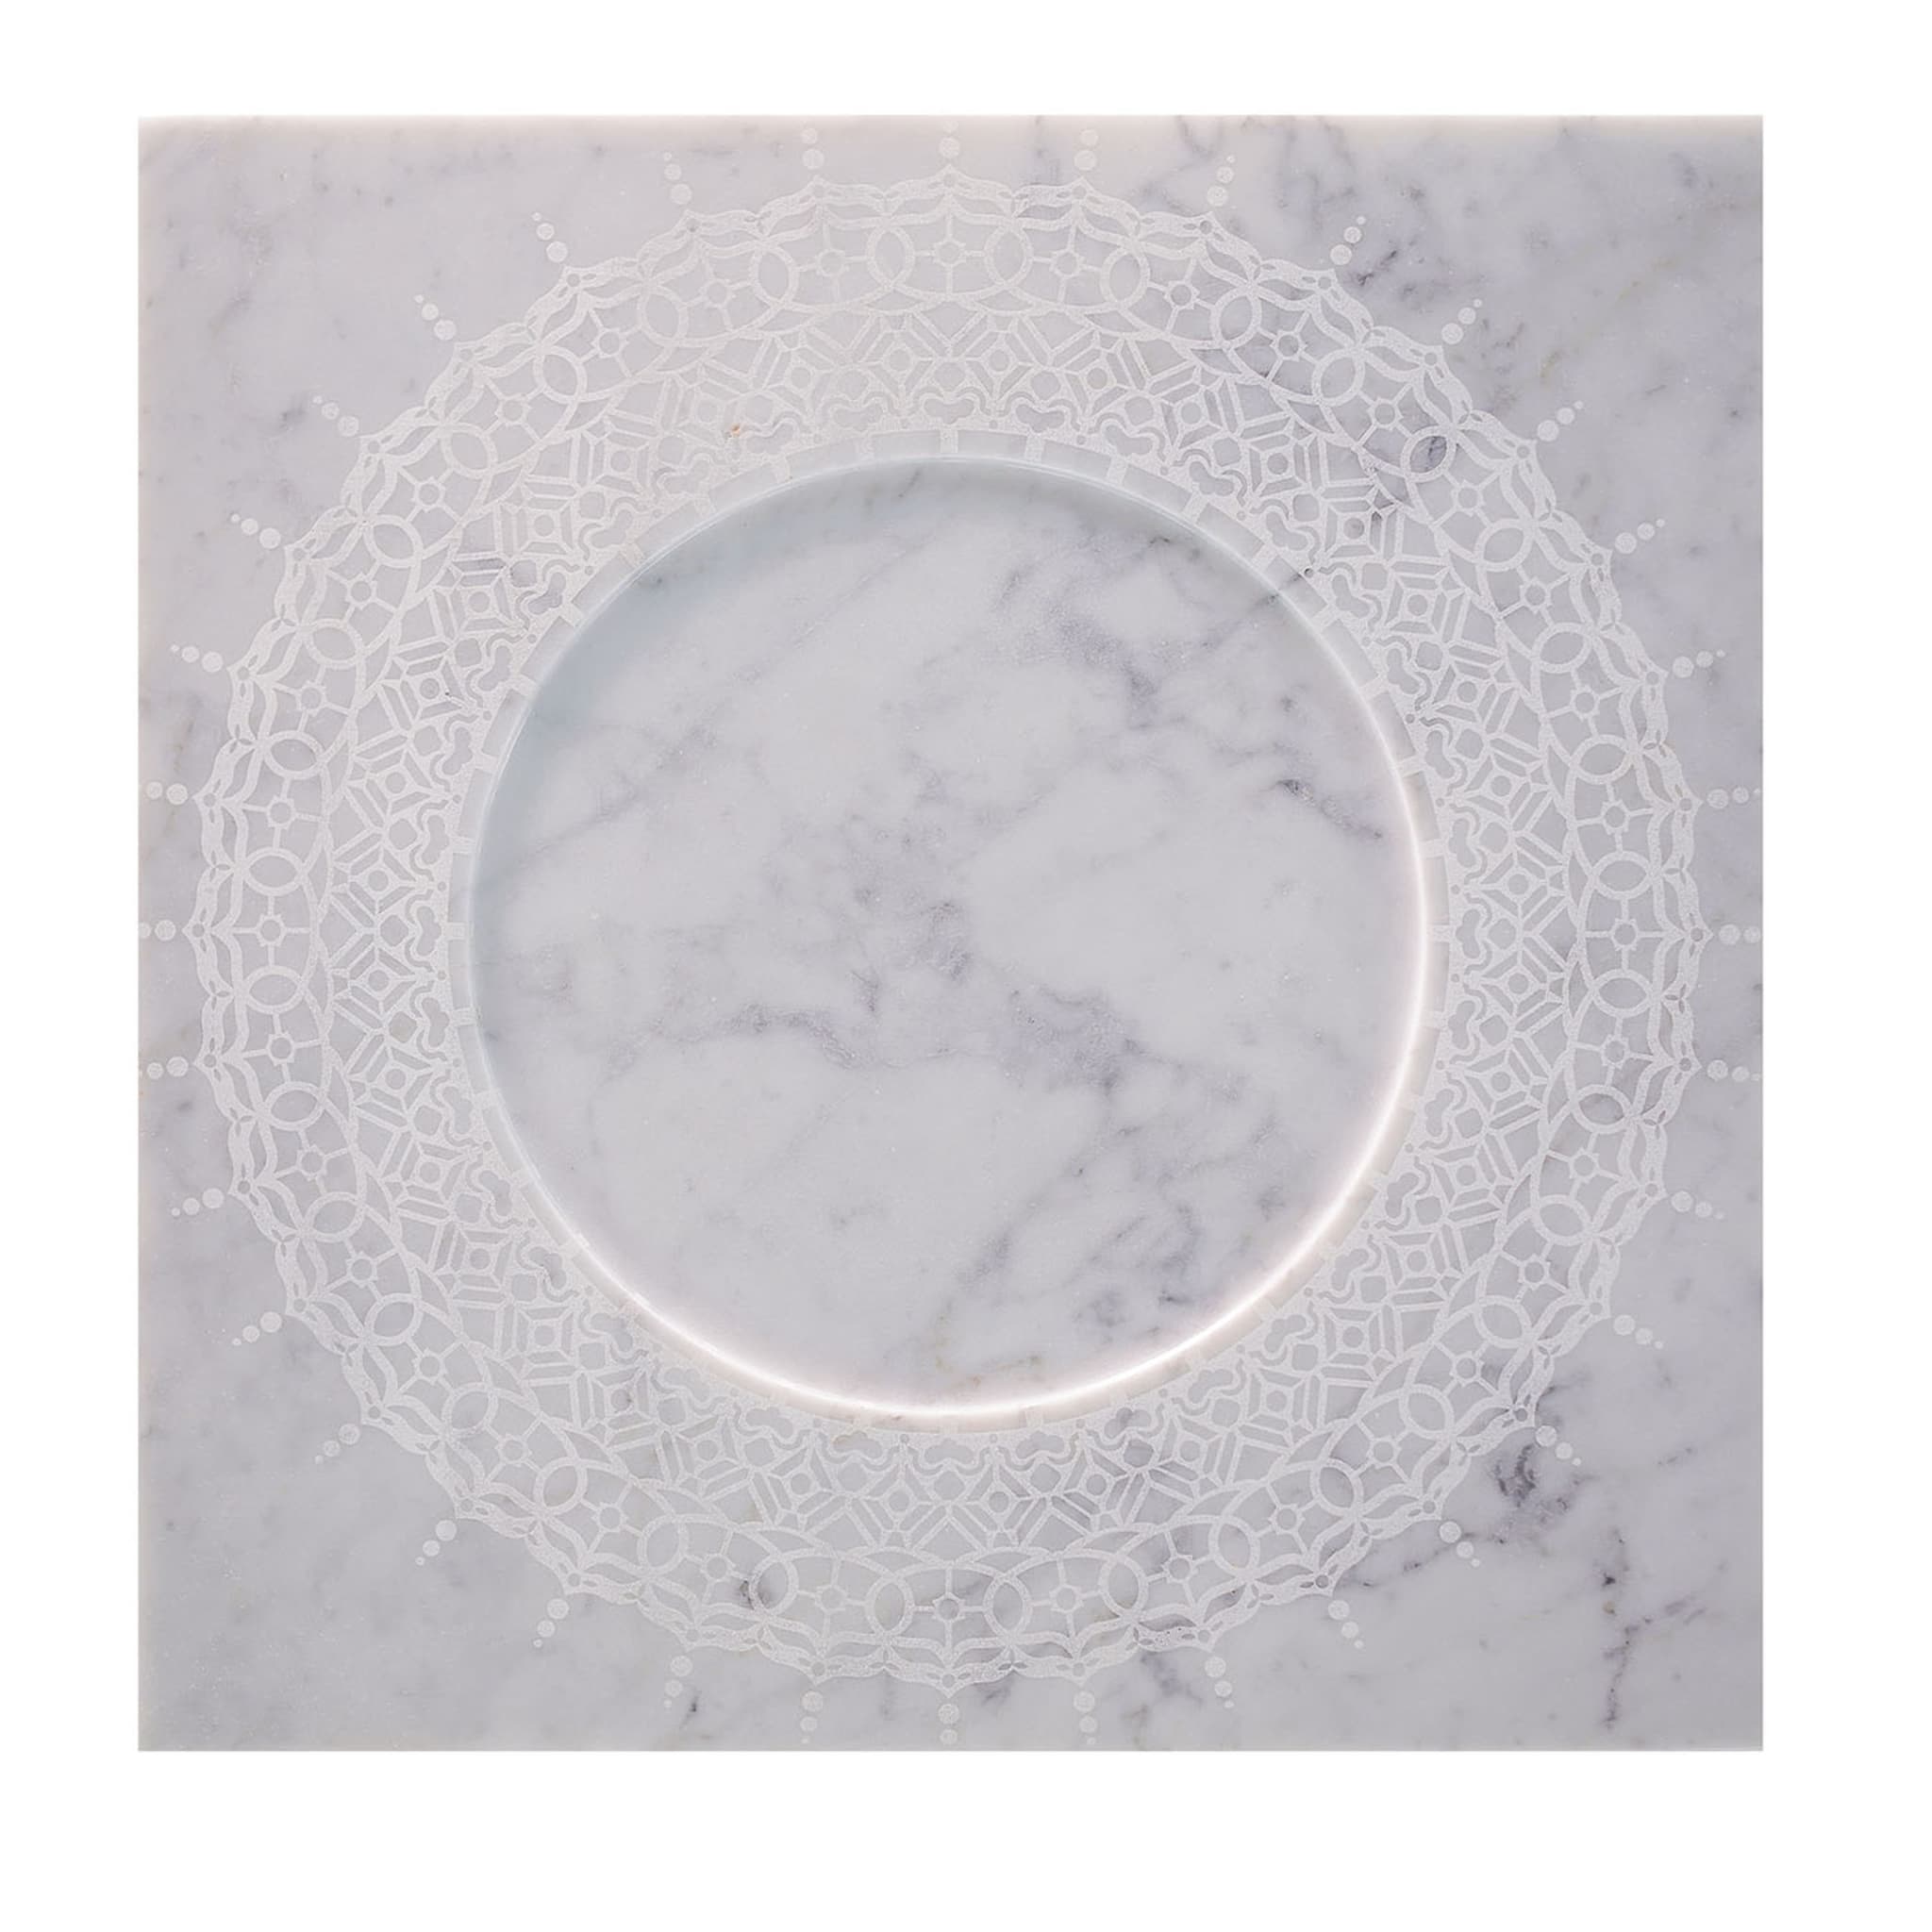 Venti20 Piatto Q in marmo bianco di Carrara - Vista principale